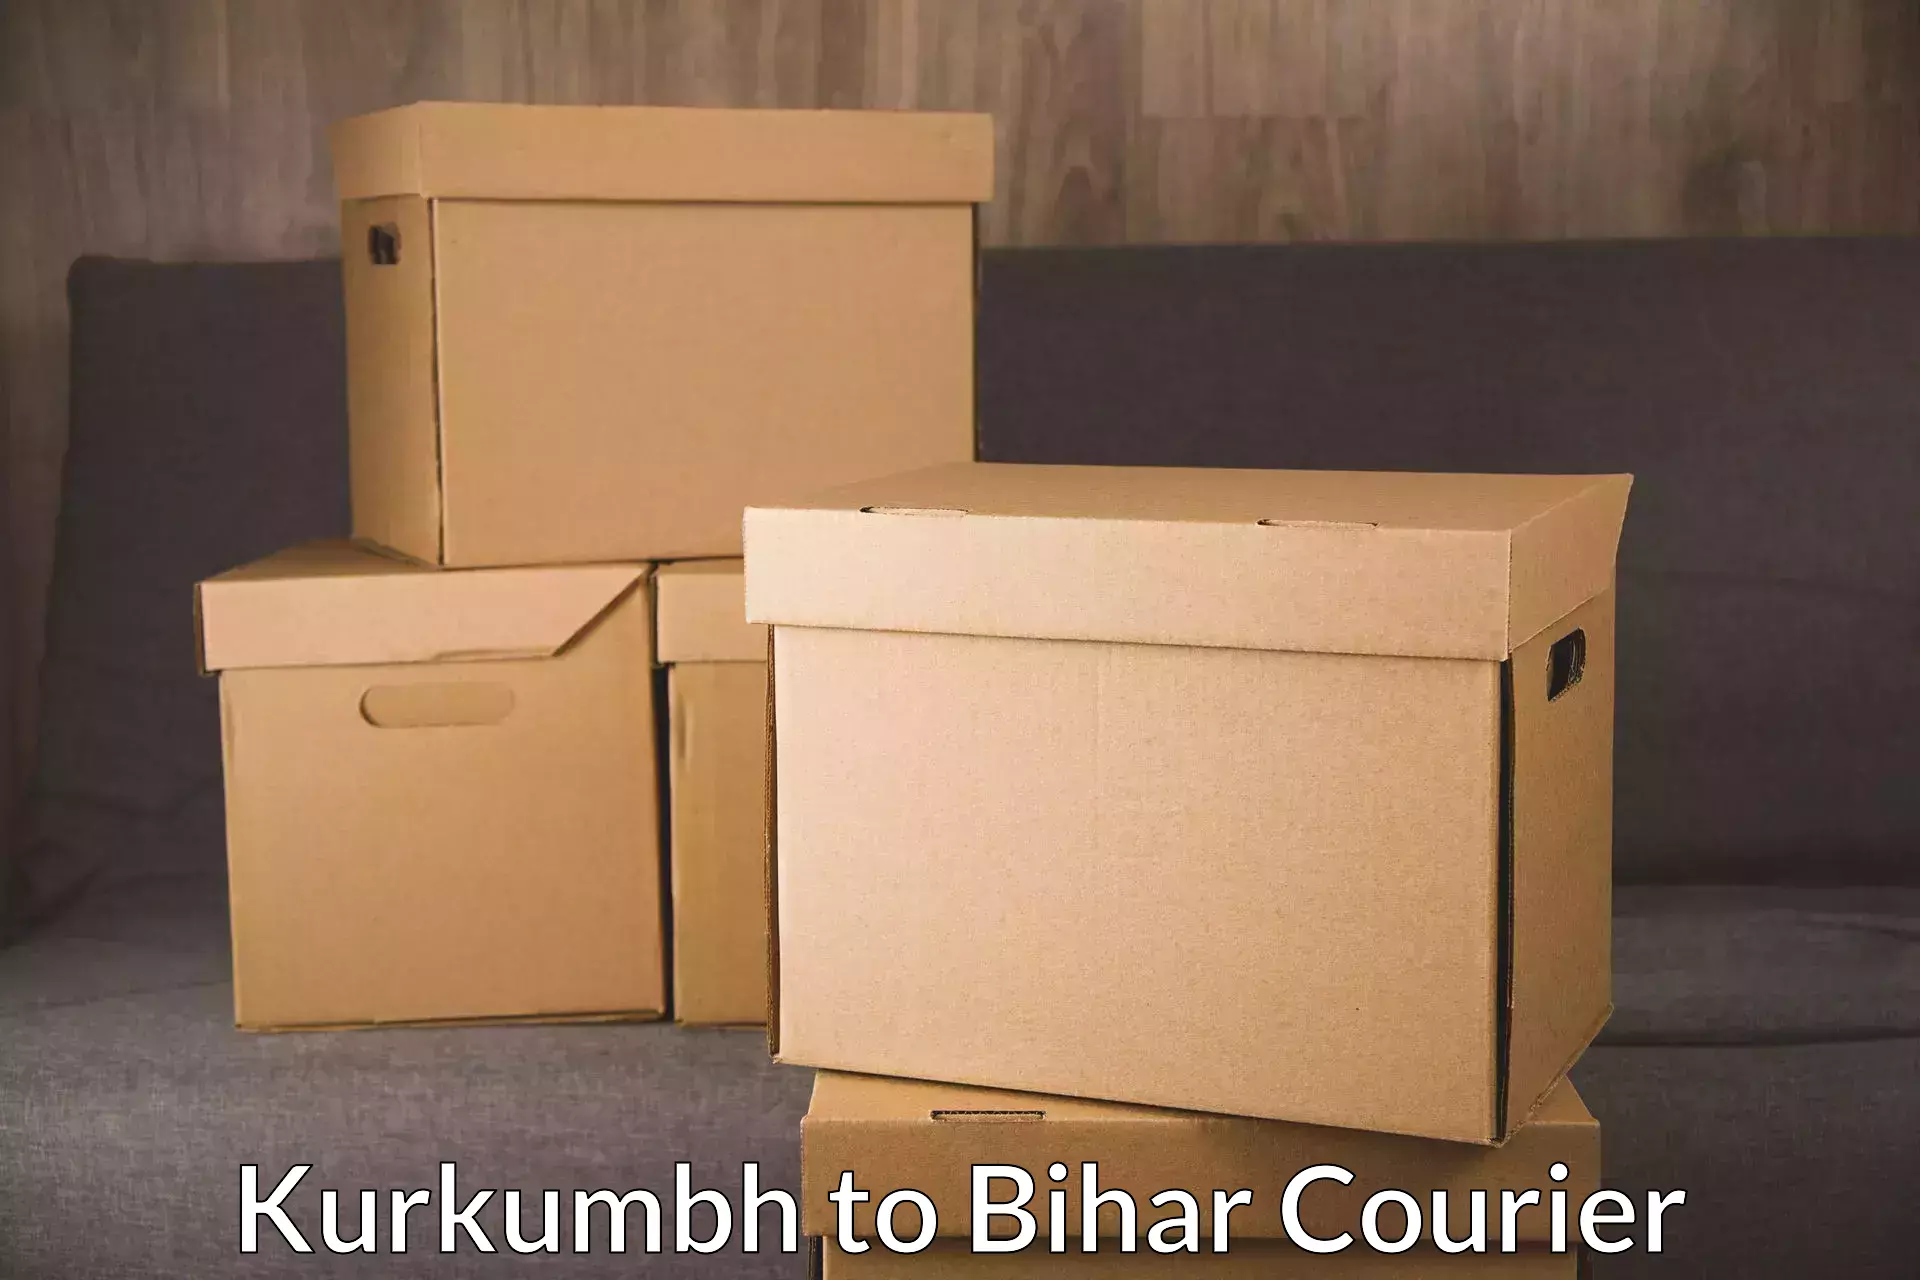 Package delivery network Kurkumbh to Bharwara